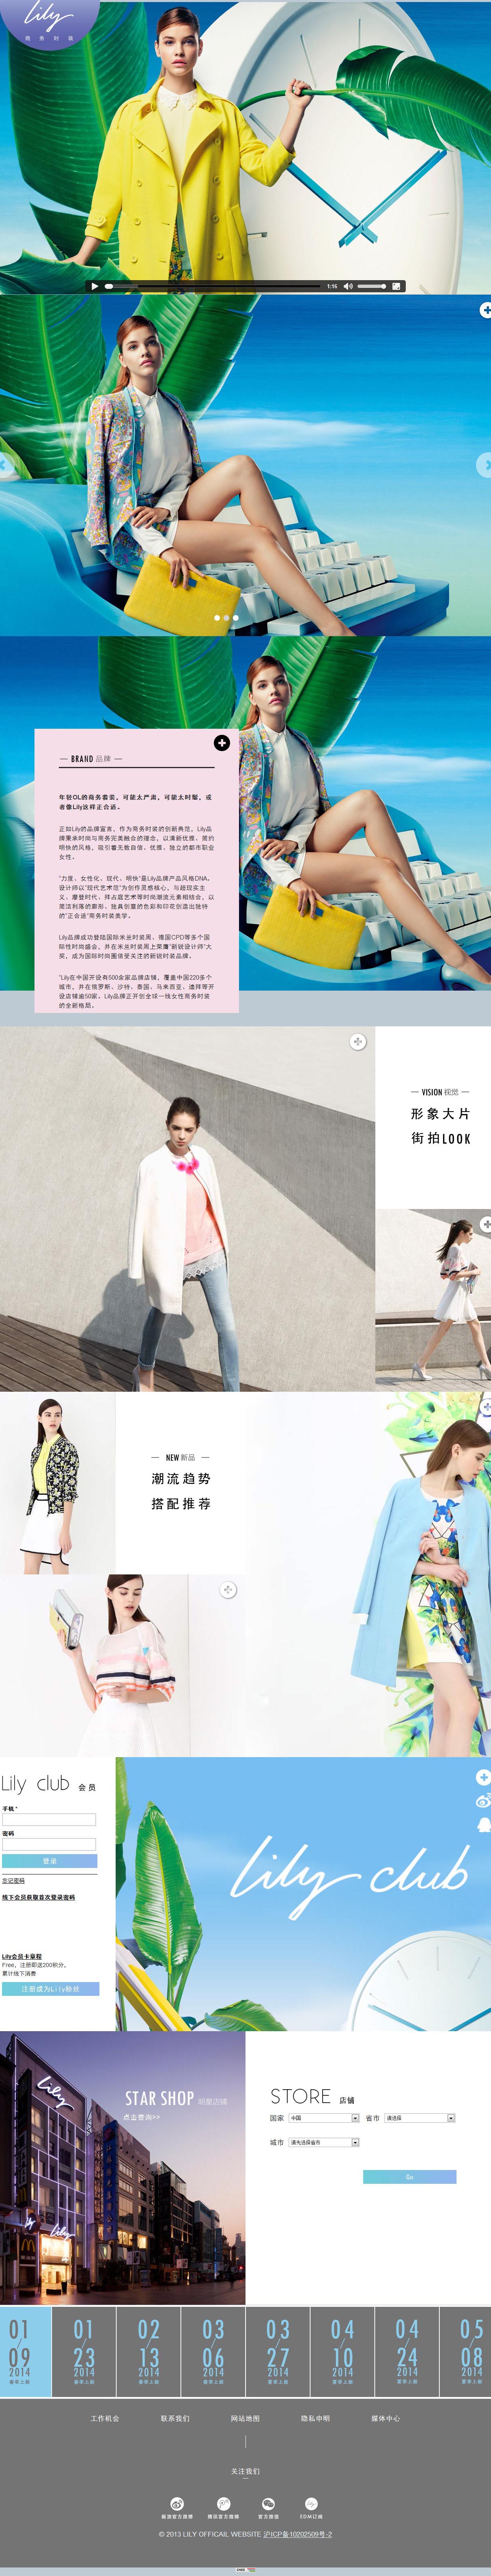 上海丝绸集团Lily品牌电子商城网站建设项目